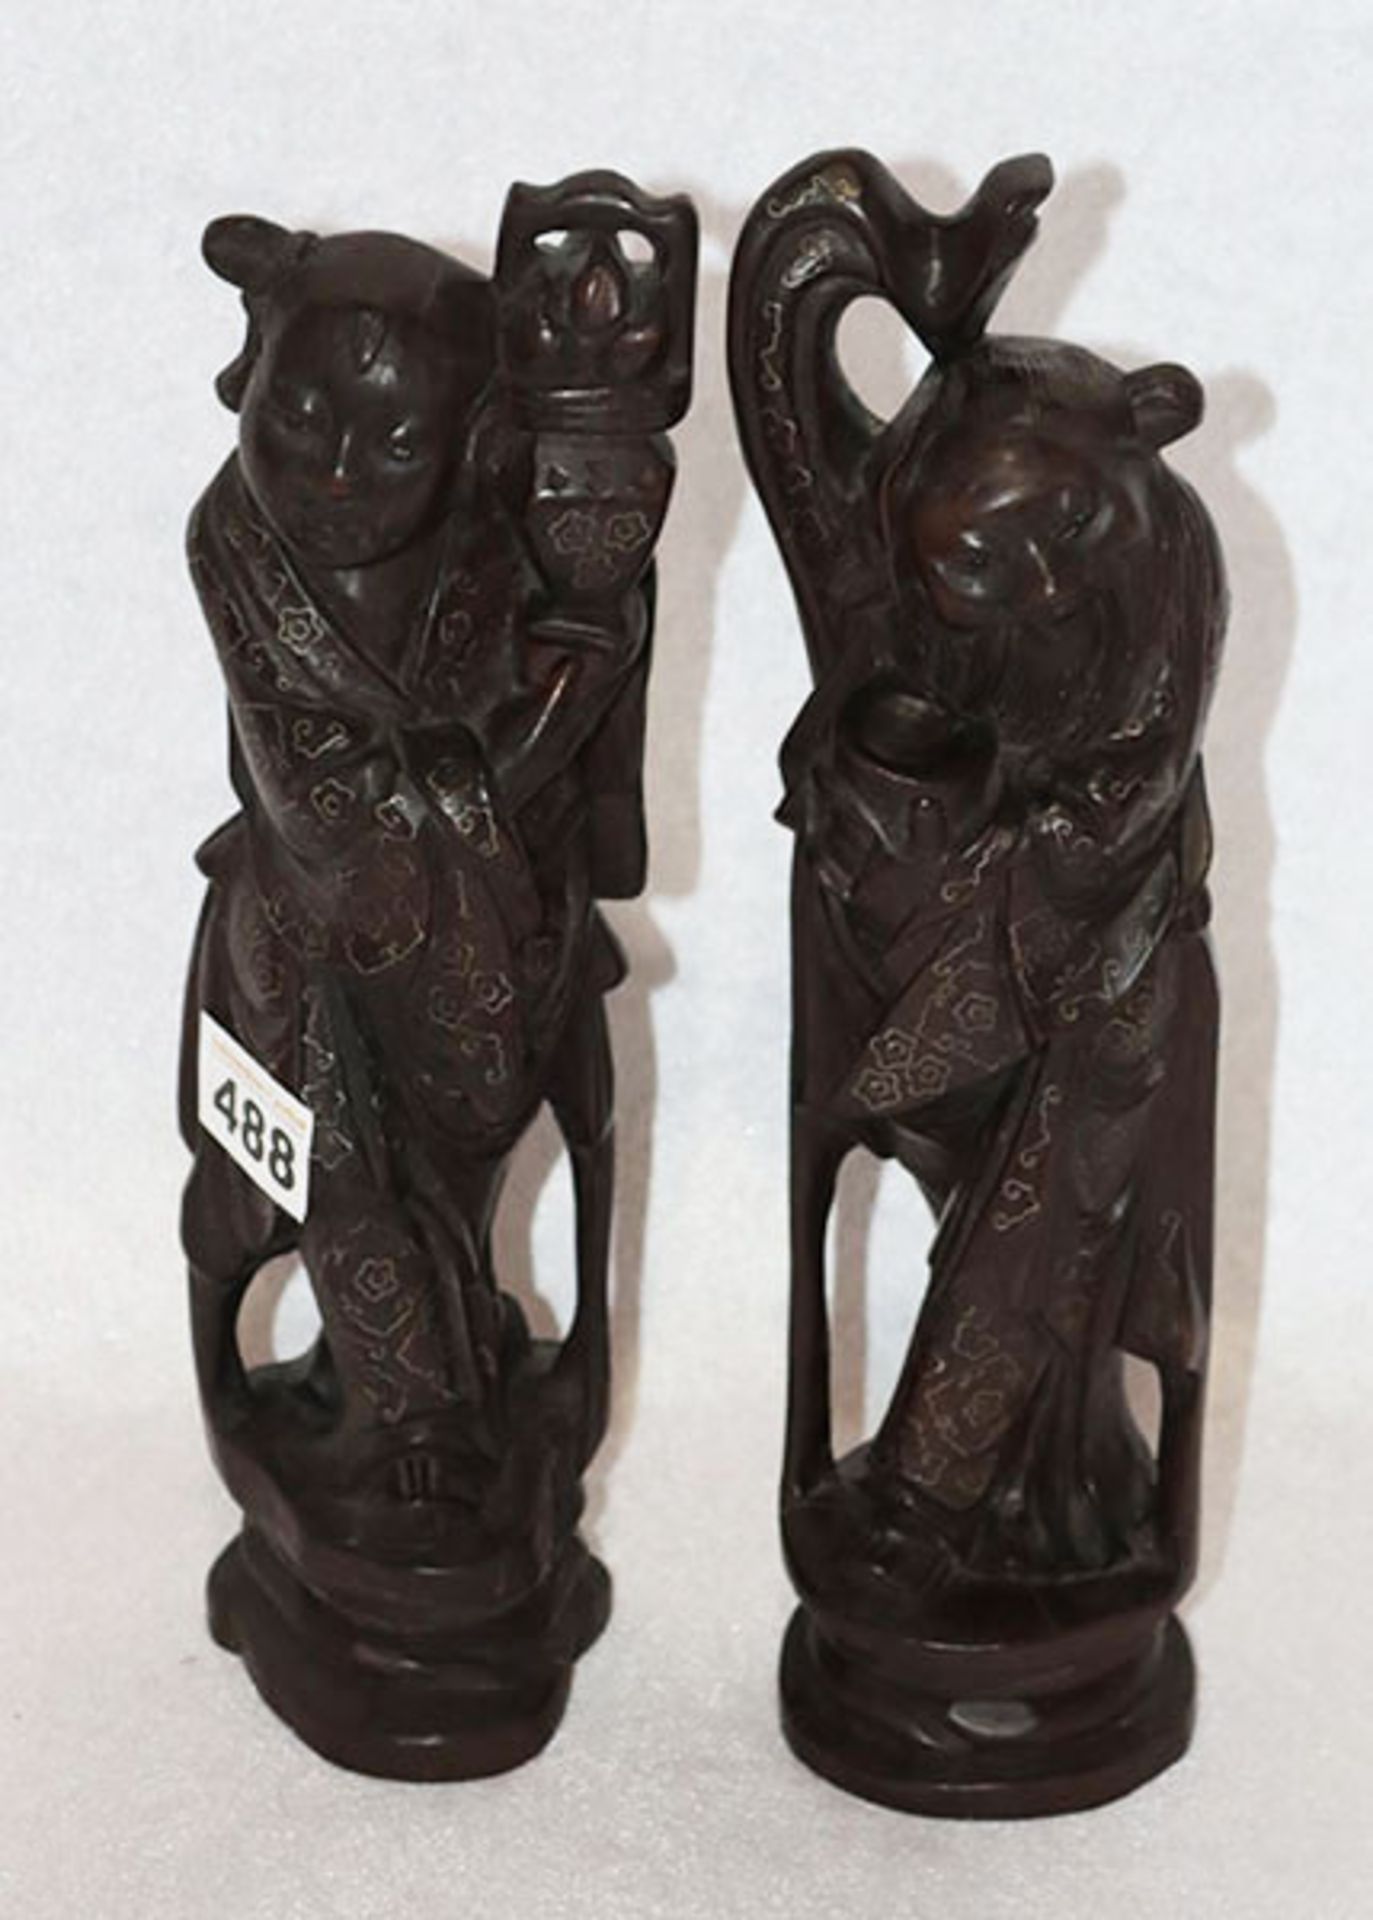 2 asiatisches Holzfiguren Paar mit Glasaugen und feinen Metalleinlagen, H 29 cm